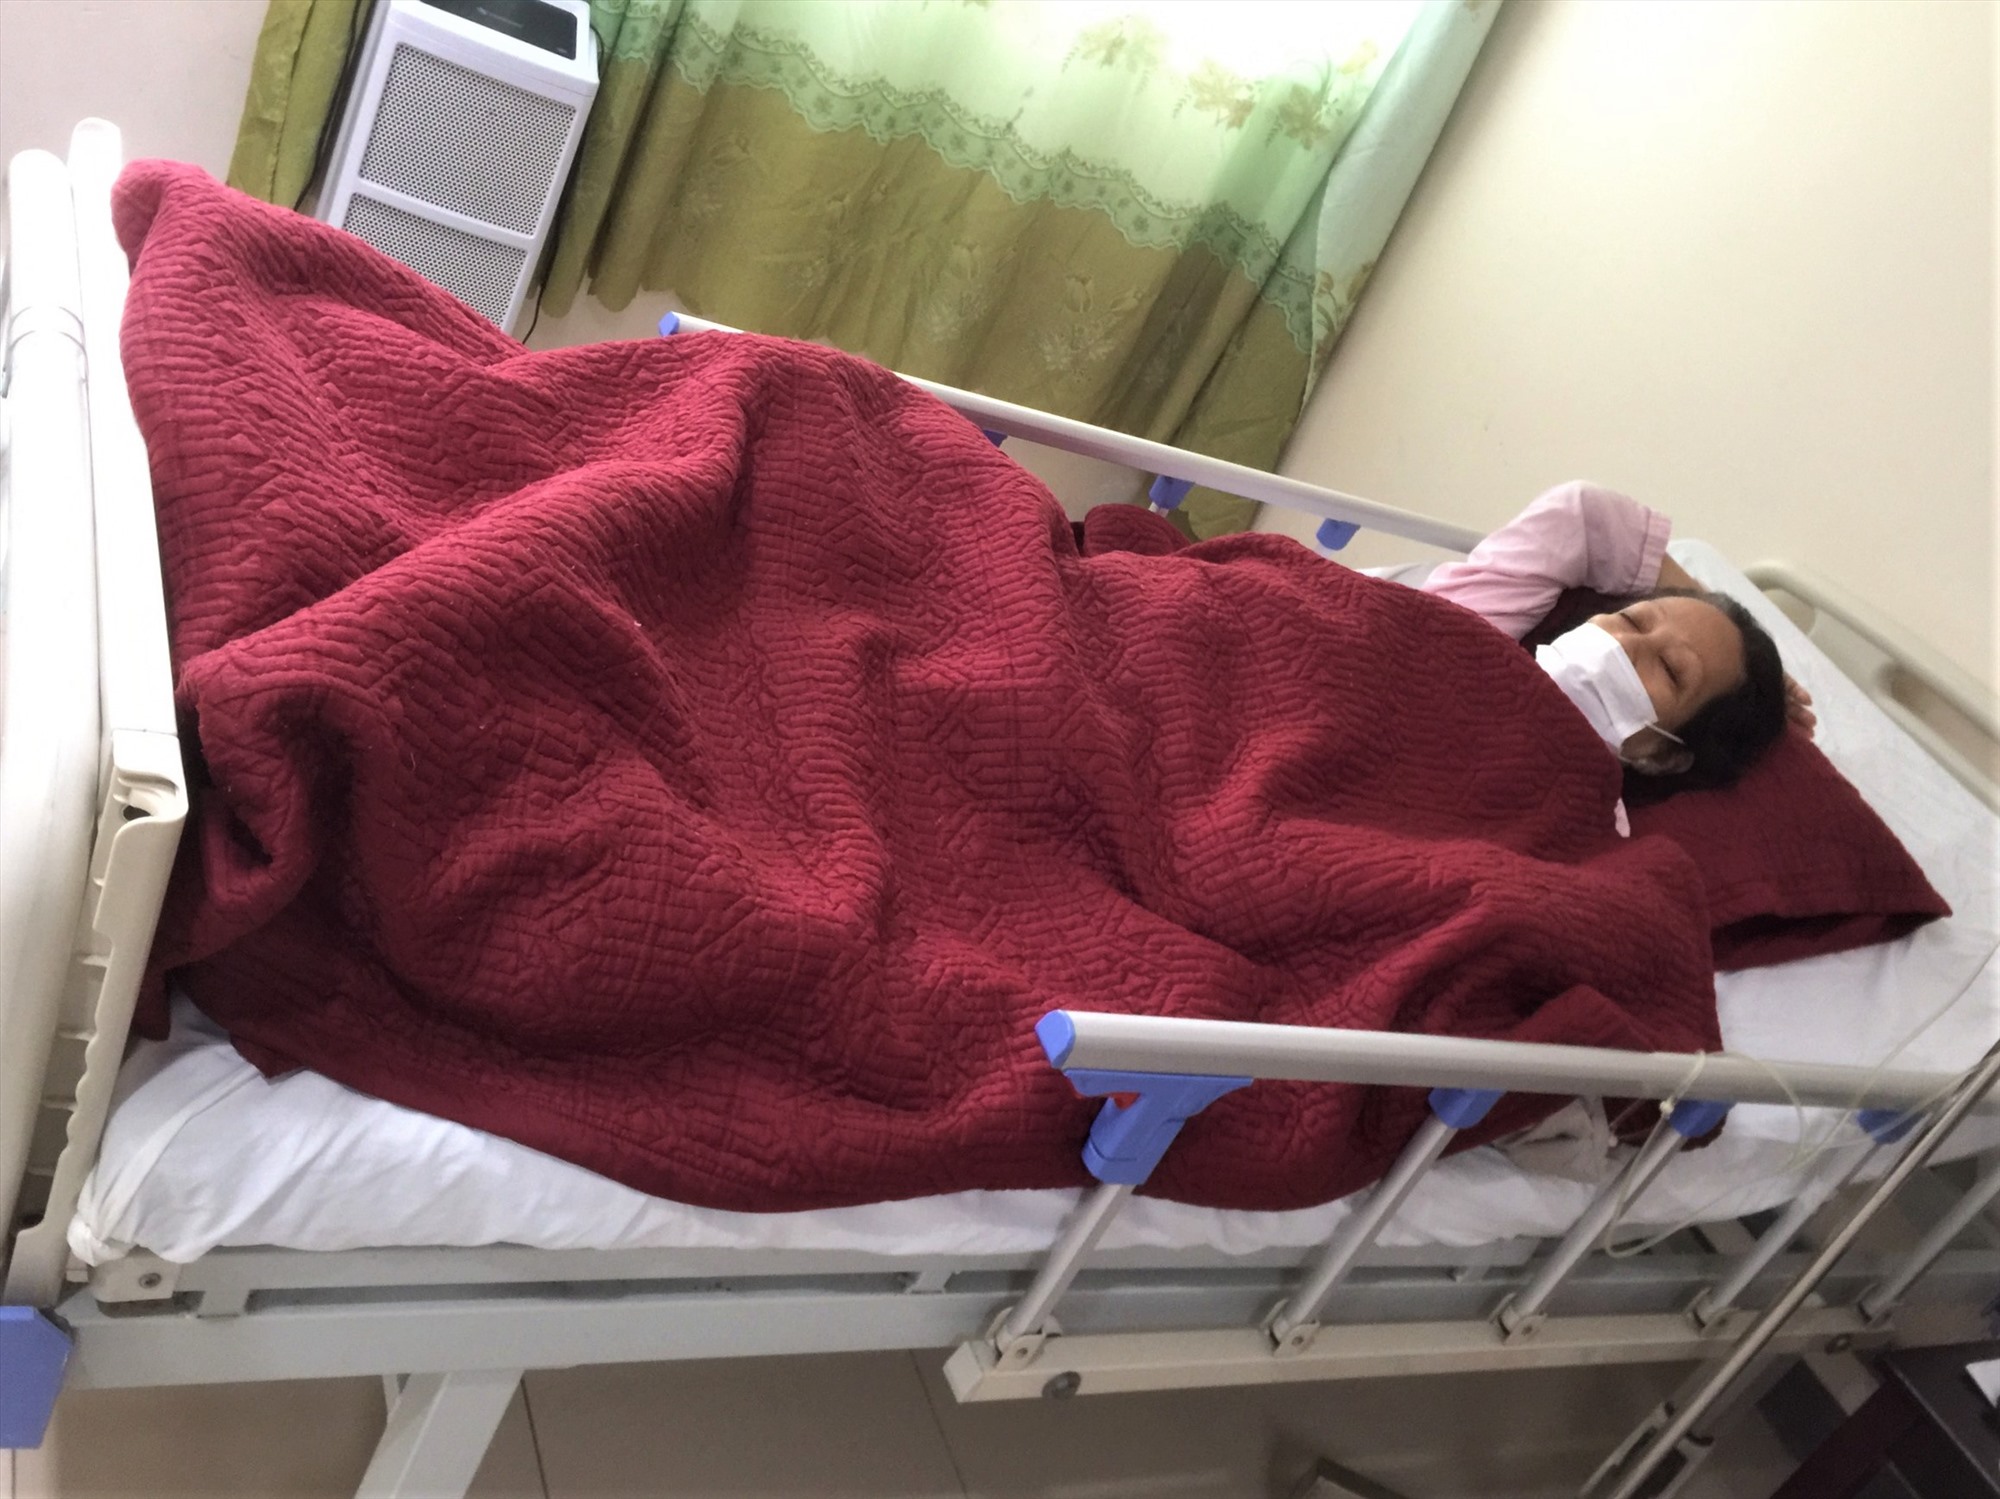 Bệnh nhân nữ Khodsayam K. đang được điều trị tại Bệnh viện Trung ương Huế - Cơ sở 2.